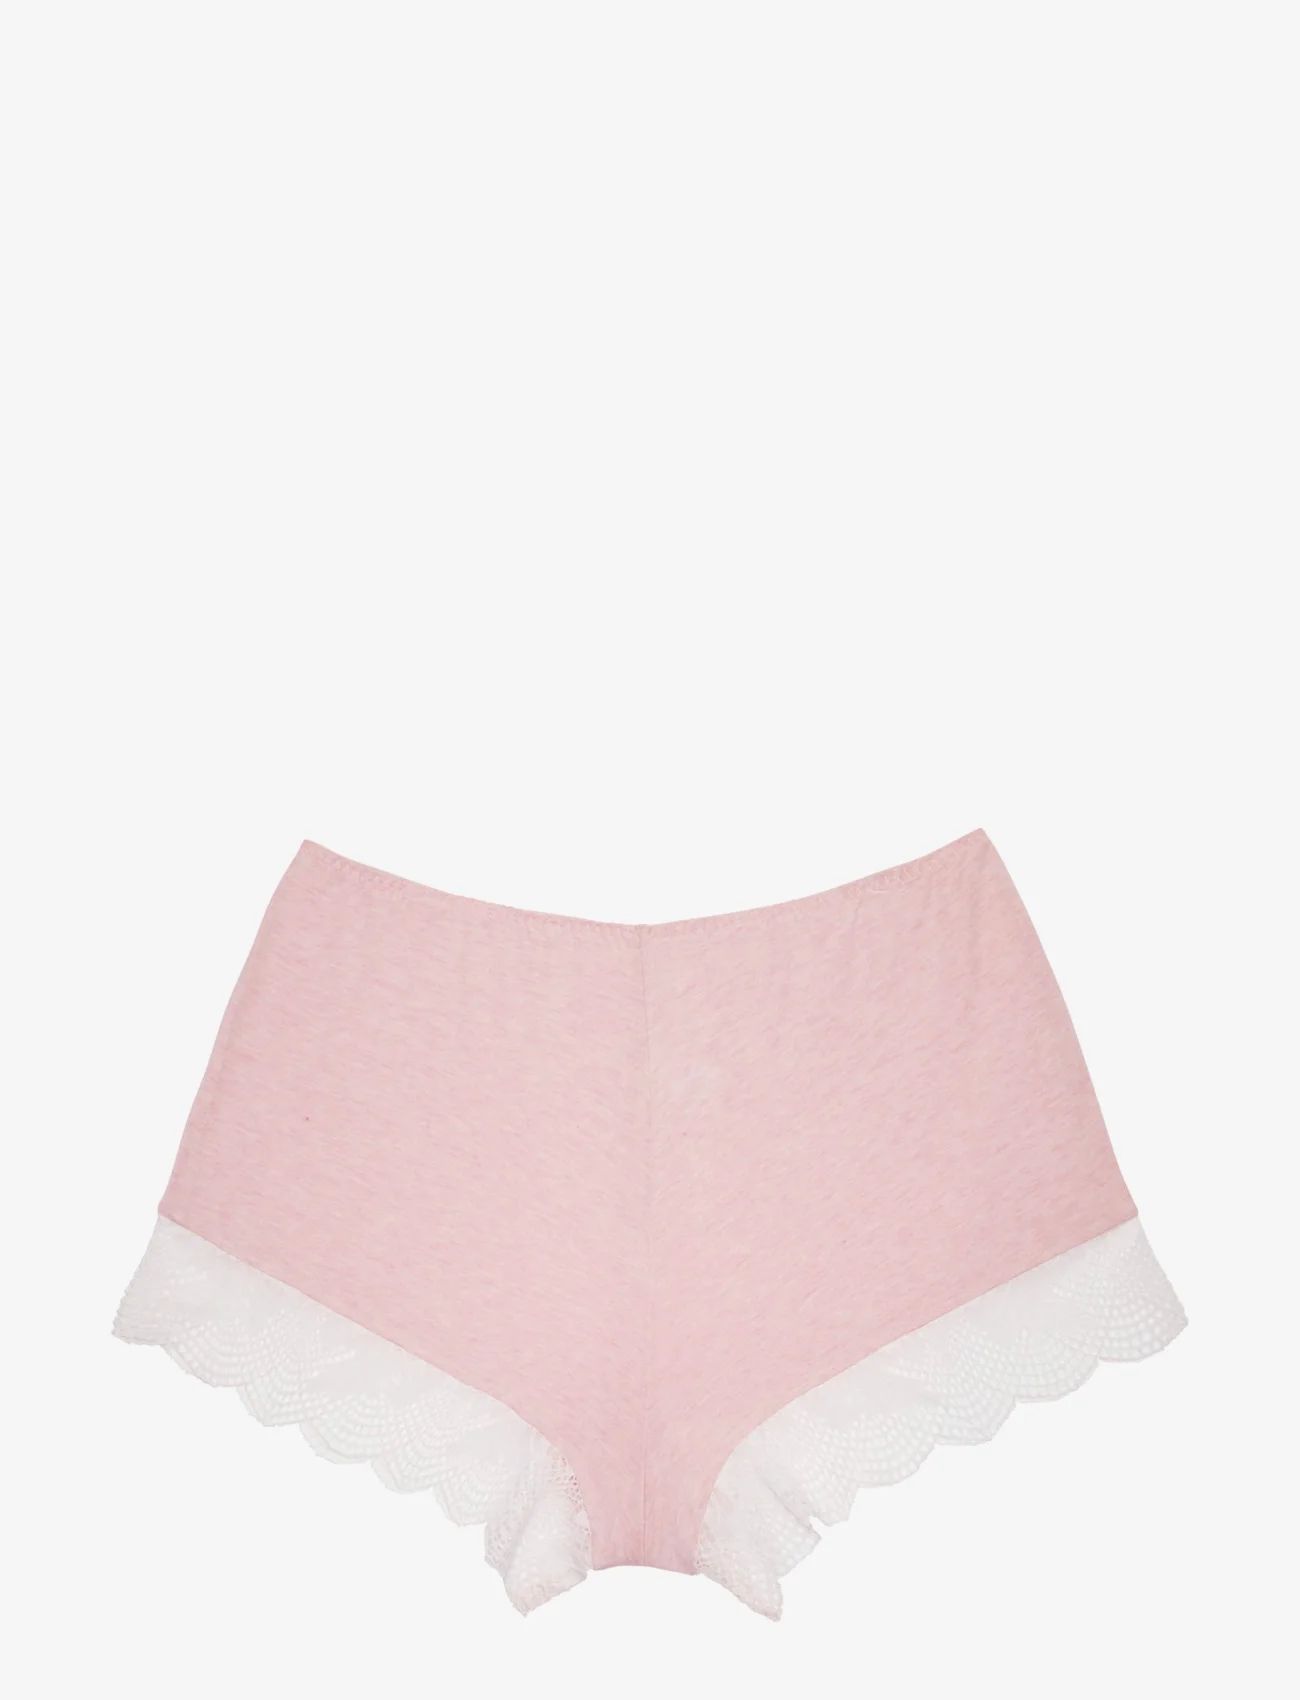 Dorina - ACACIA Shorts - lägsta priserna - pink - 0